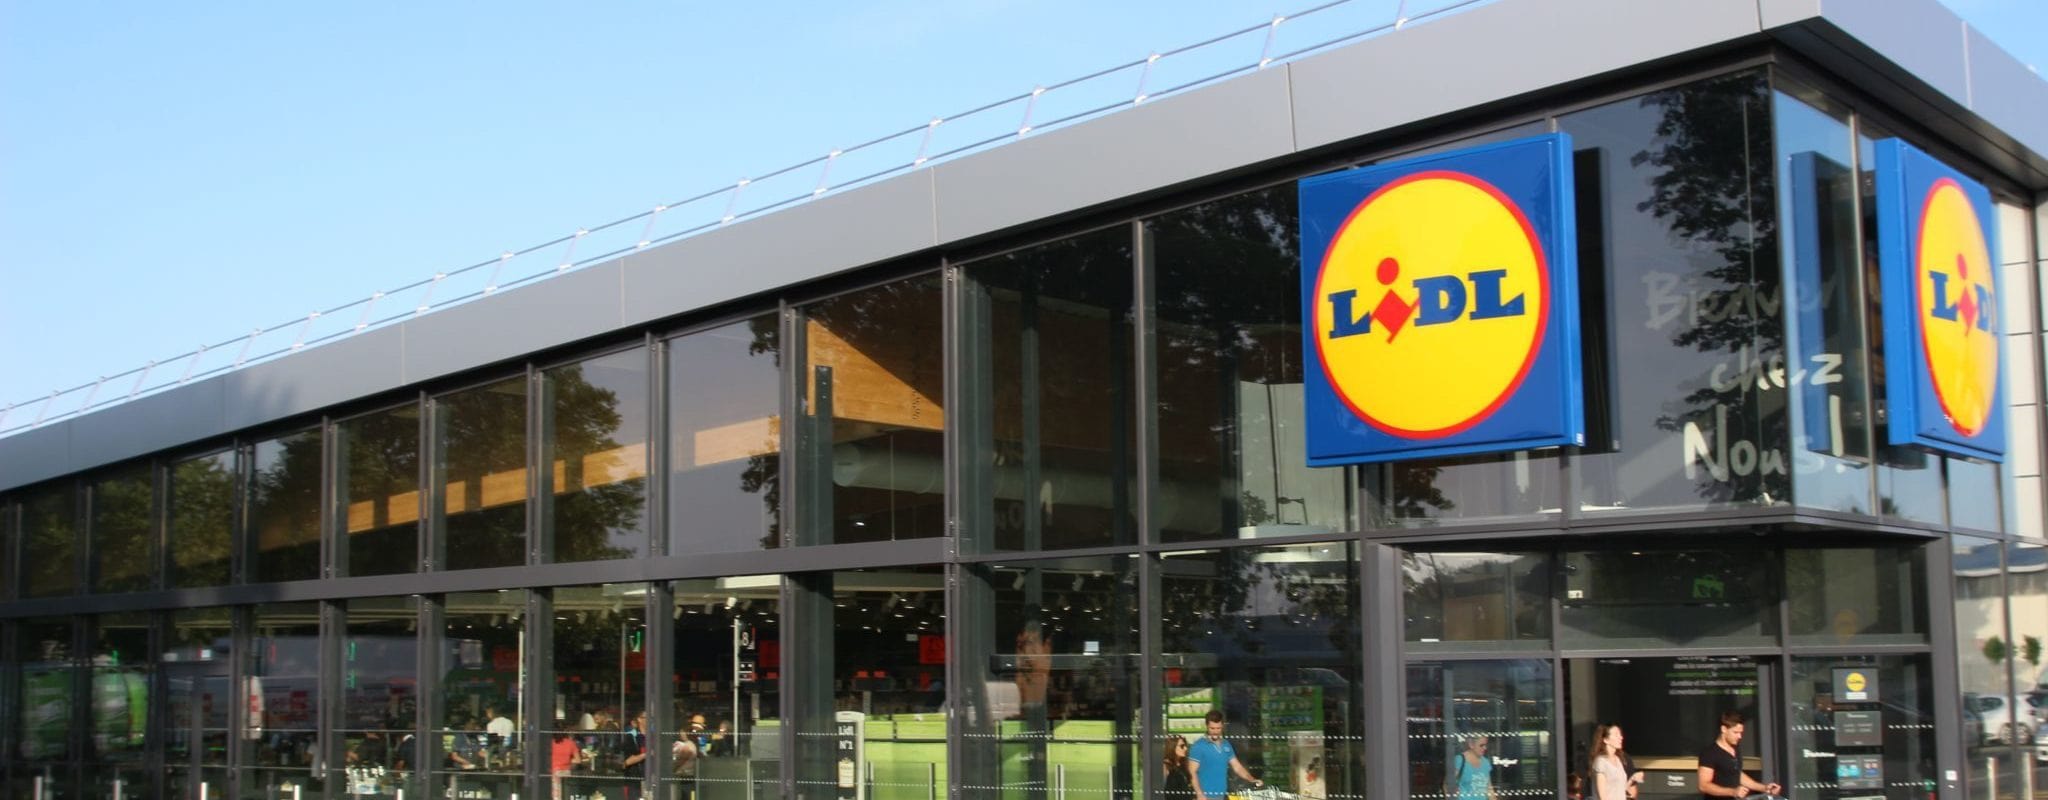 Six nouveaux centres commerciaux Lidl en Alsace d’ici 2019